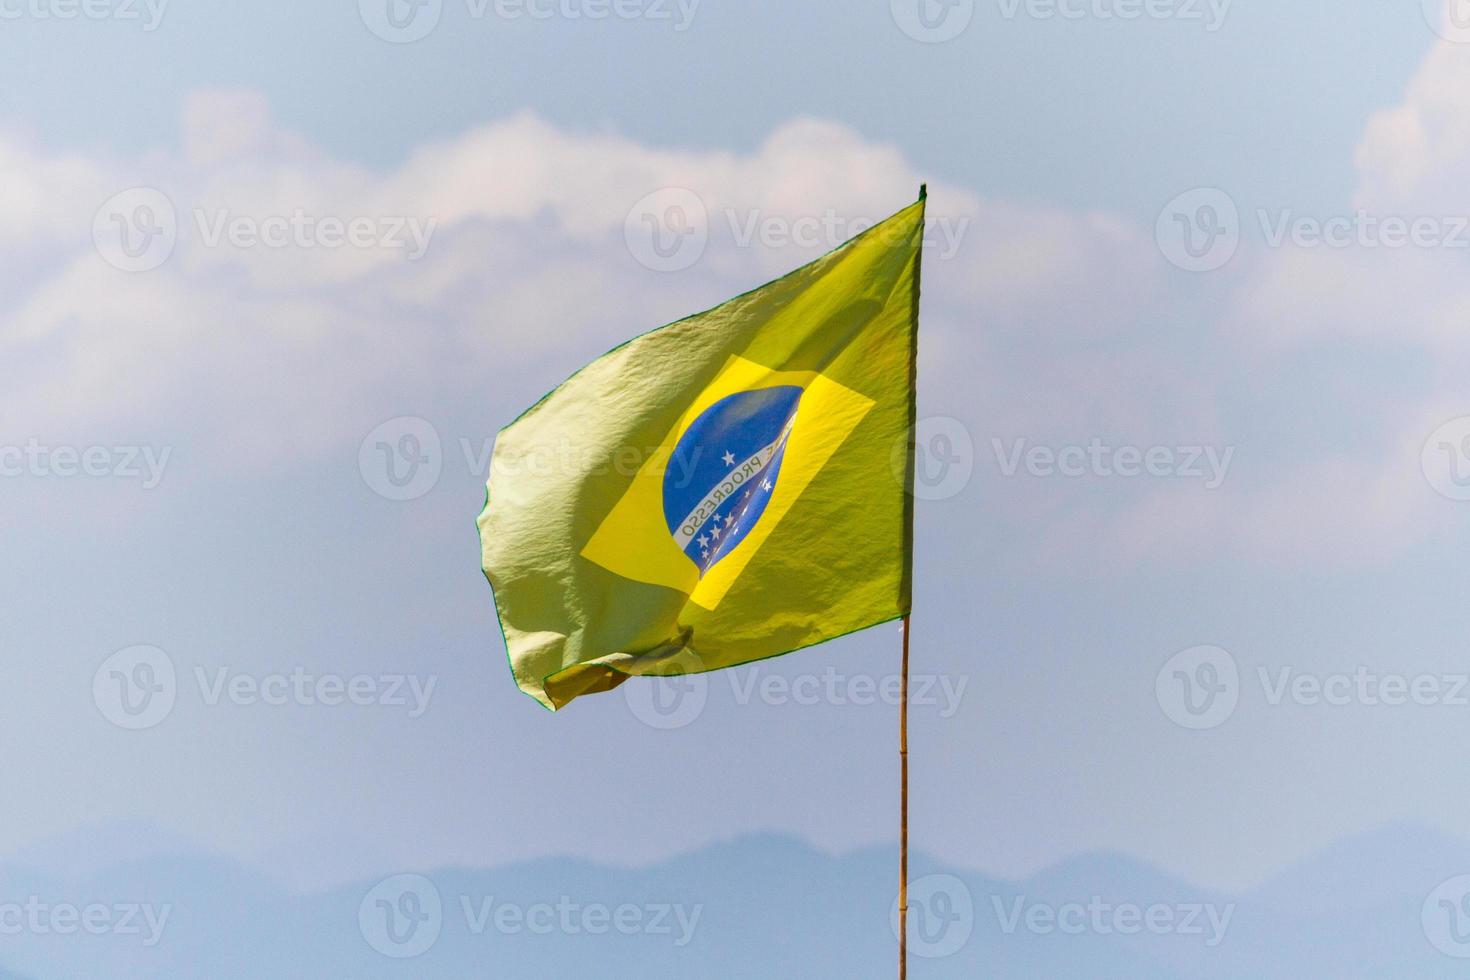 bandeira do brasil desbotada ao ar livre em praia do rio de janeiro foto